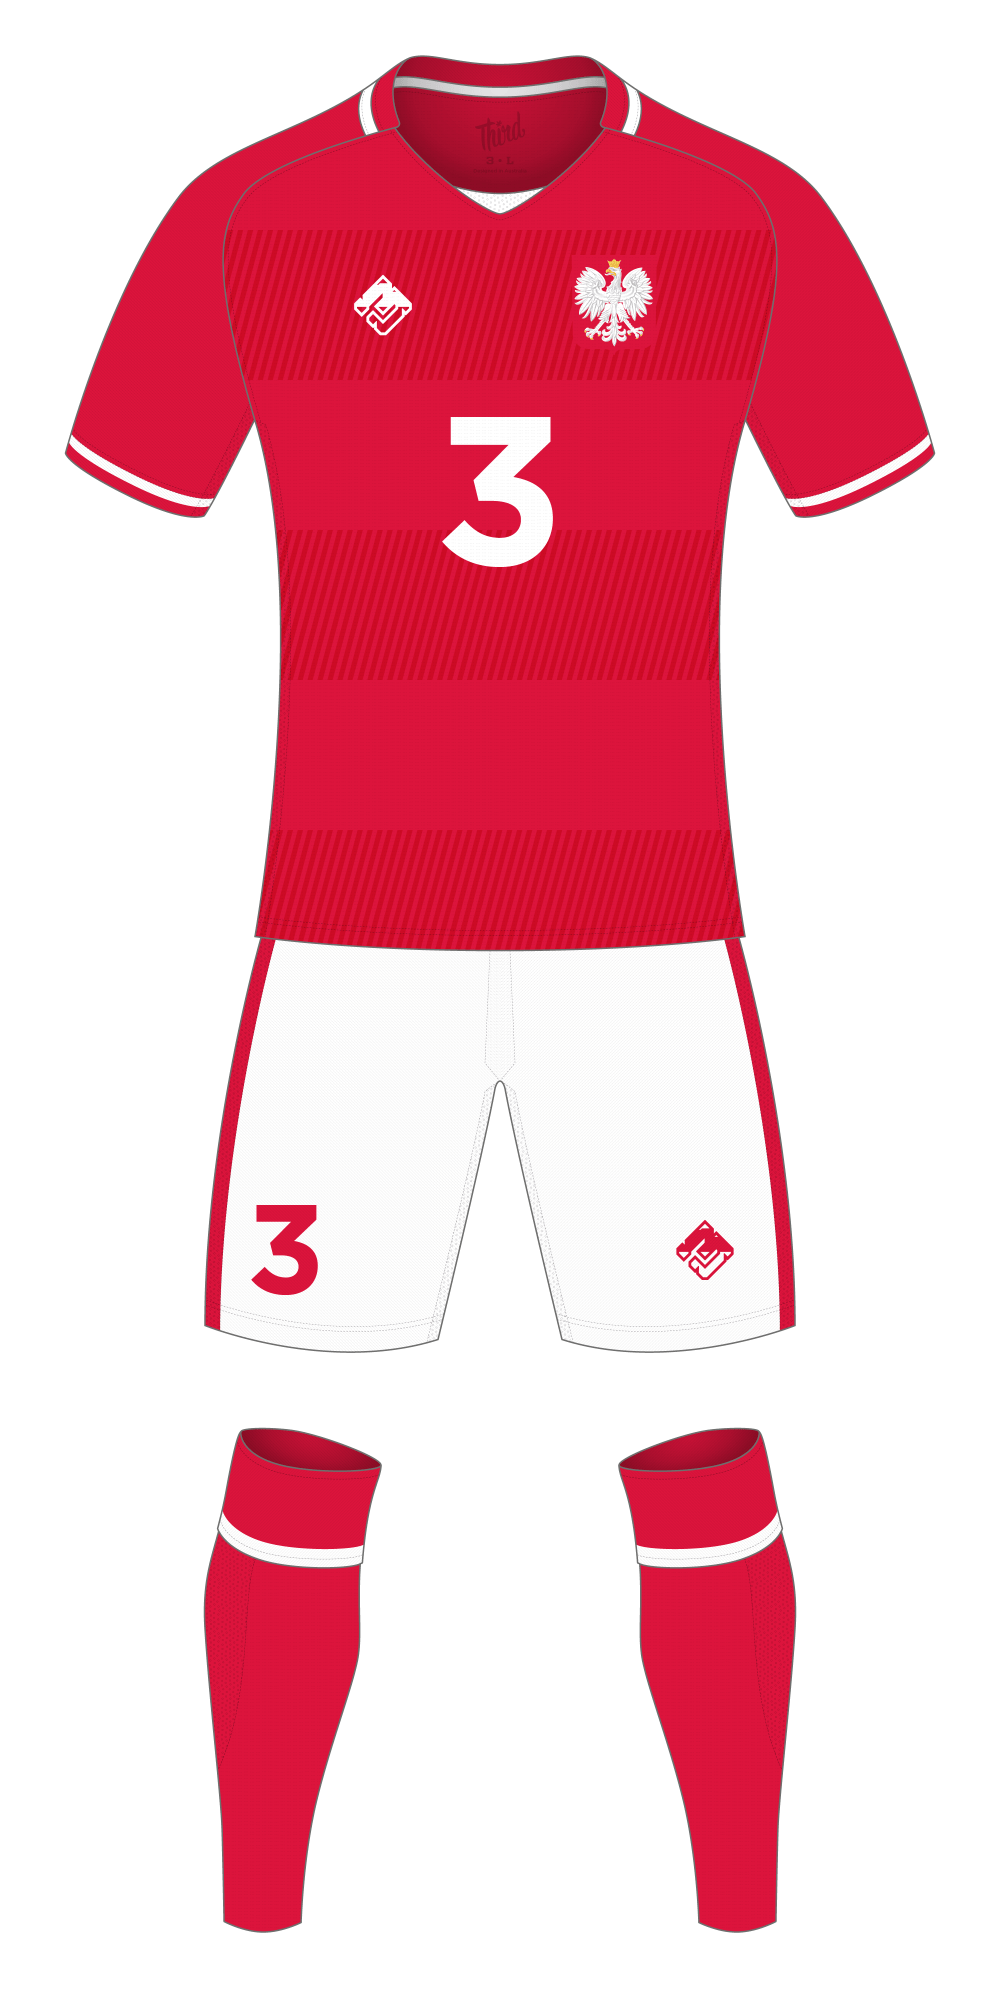 Poland World Cup 2018 concept